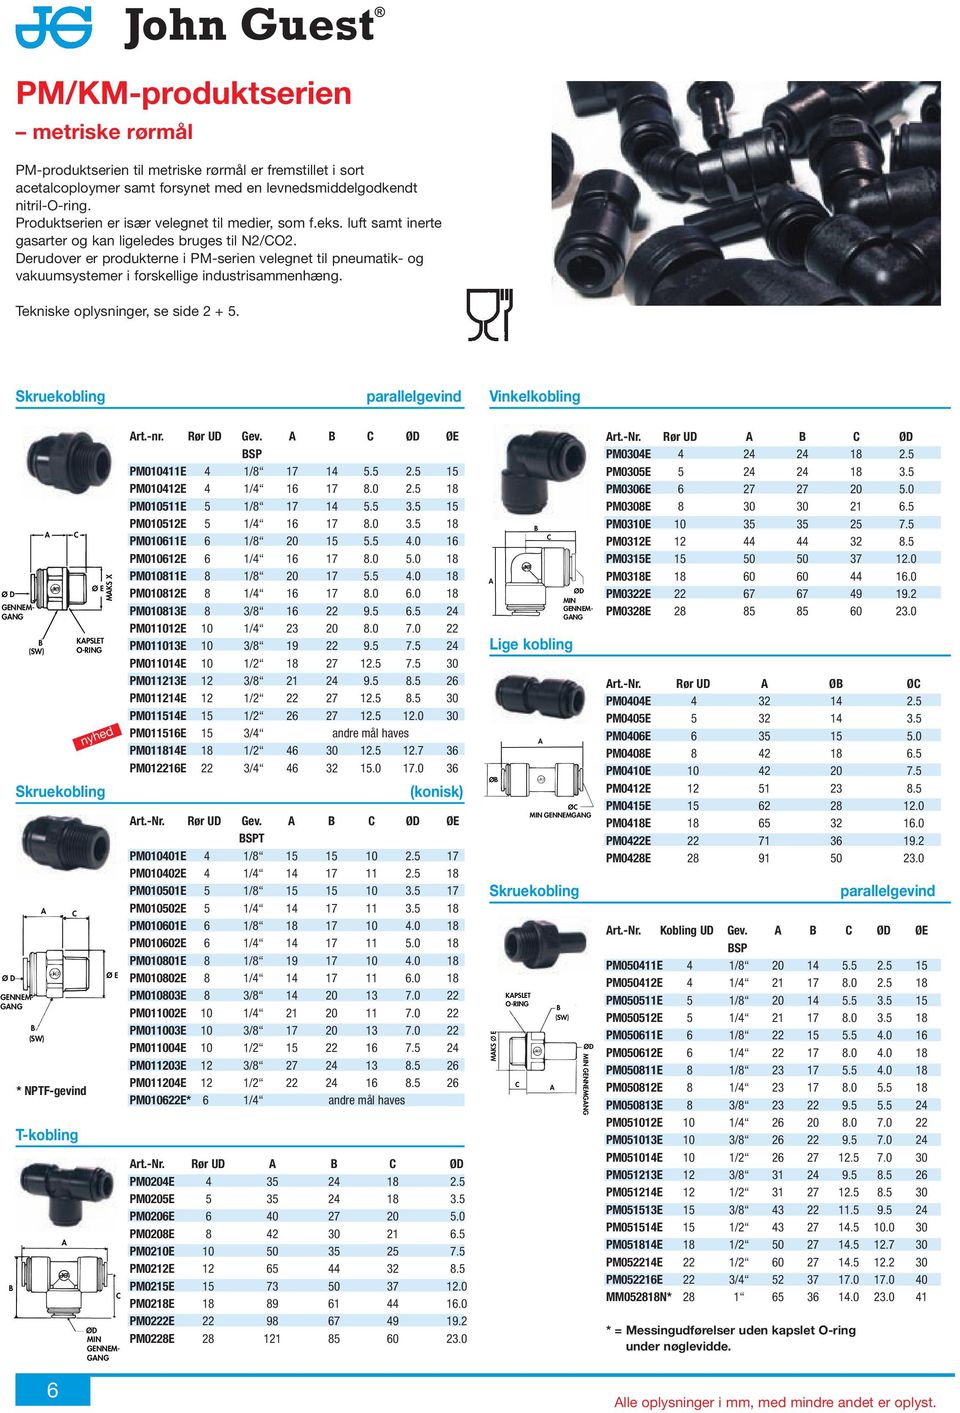 erudover er produkterne i PM-serien velegnet til pneumatik- og vakuumsystemer i forskellige industrisammenhæng. Tekniske oplysninger, se side 2 + 5.